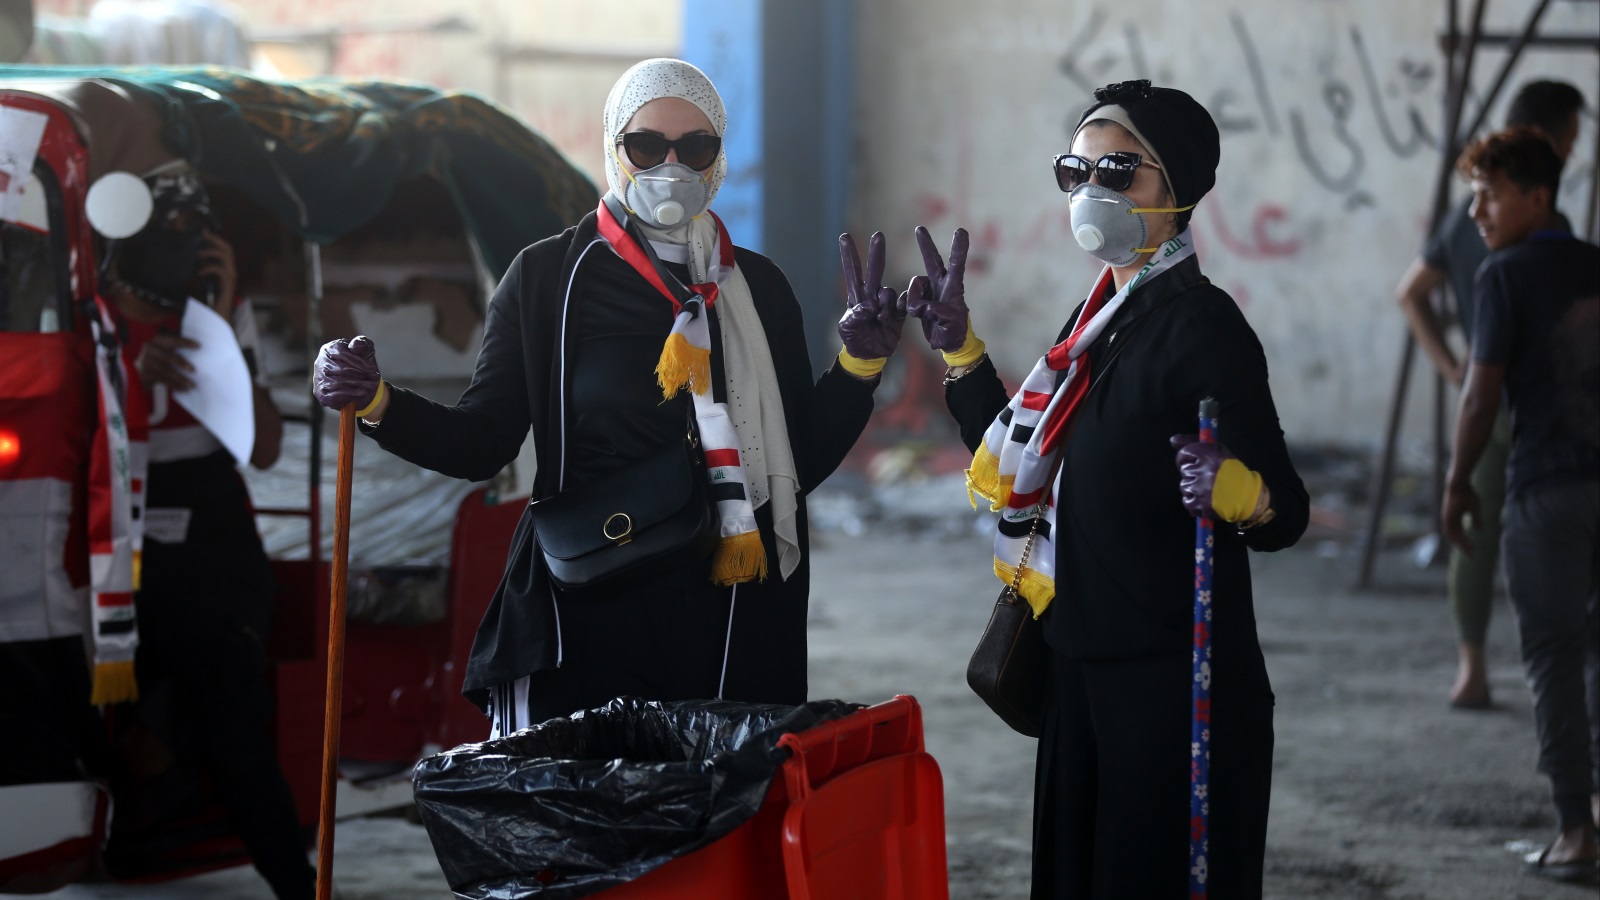 فتاتان تنظفان المكان قرب ساحة التحرير في بغداد دعما للمظاهرات (الأناضول)